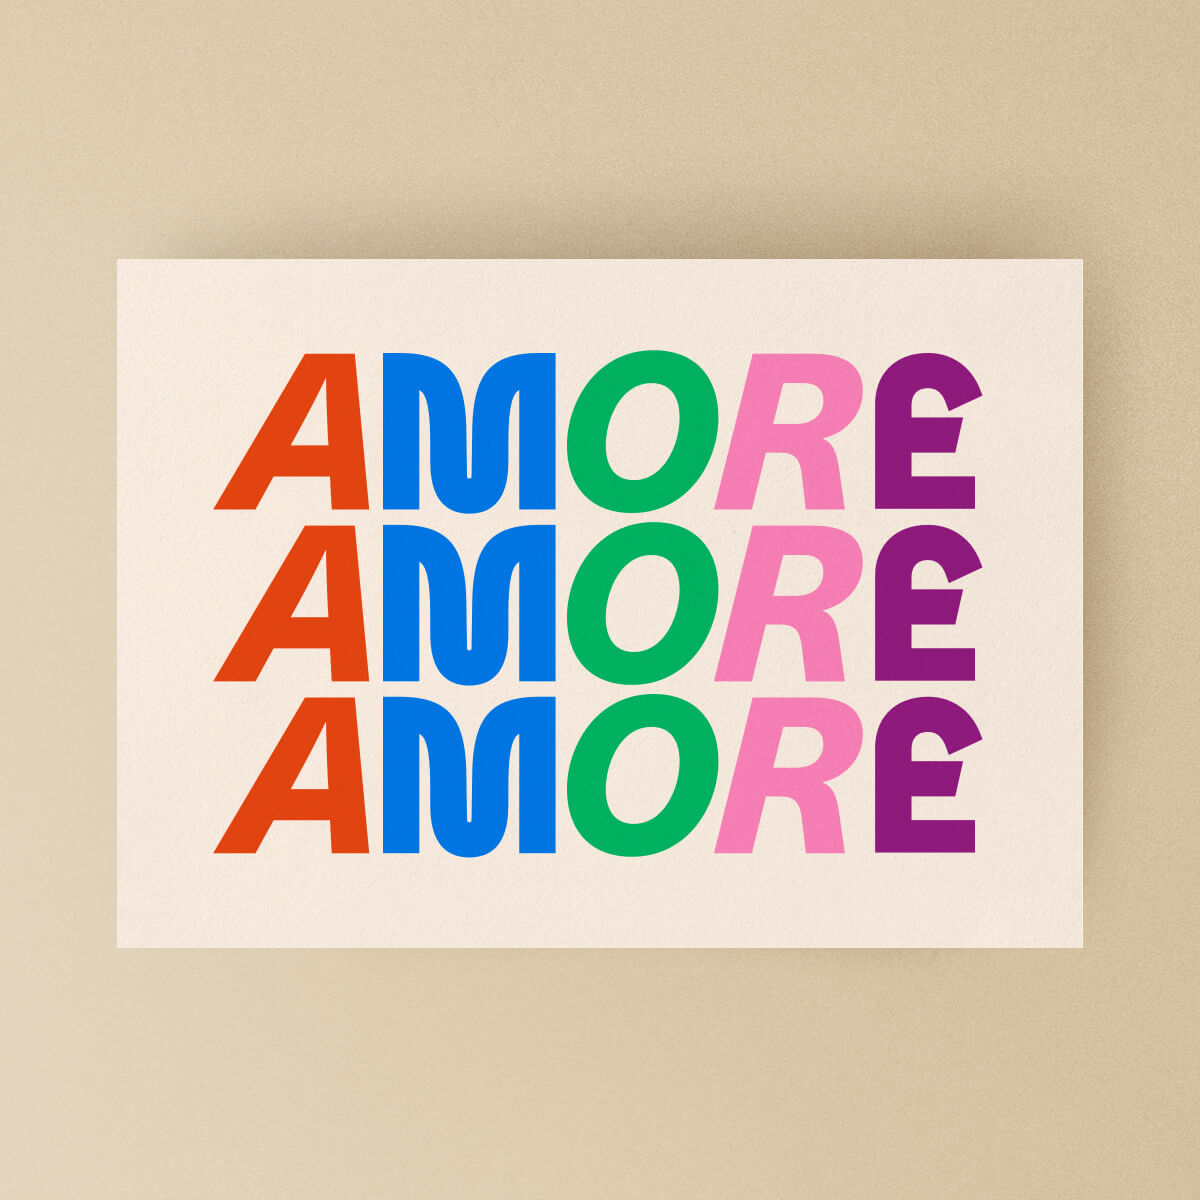 Vorderseite der AMORE Postkarte von studio ciao. Mit dreifachem "AMORE"-Schriftzug in bunten Farben und schöner Typografie.